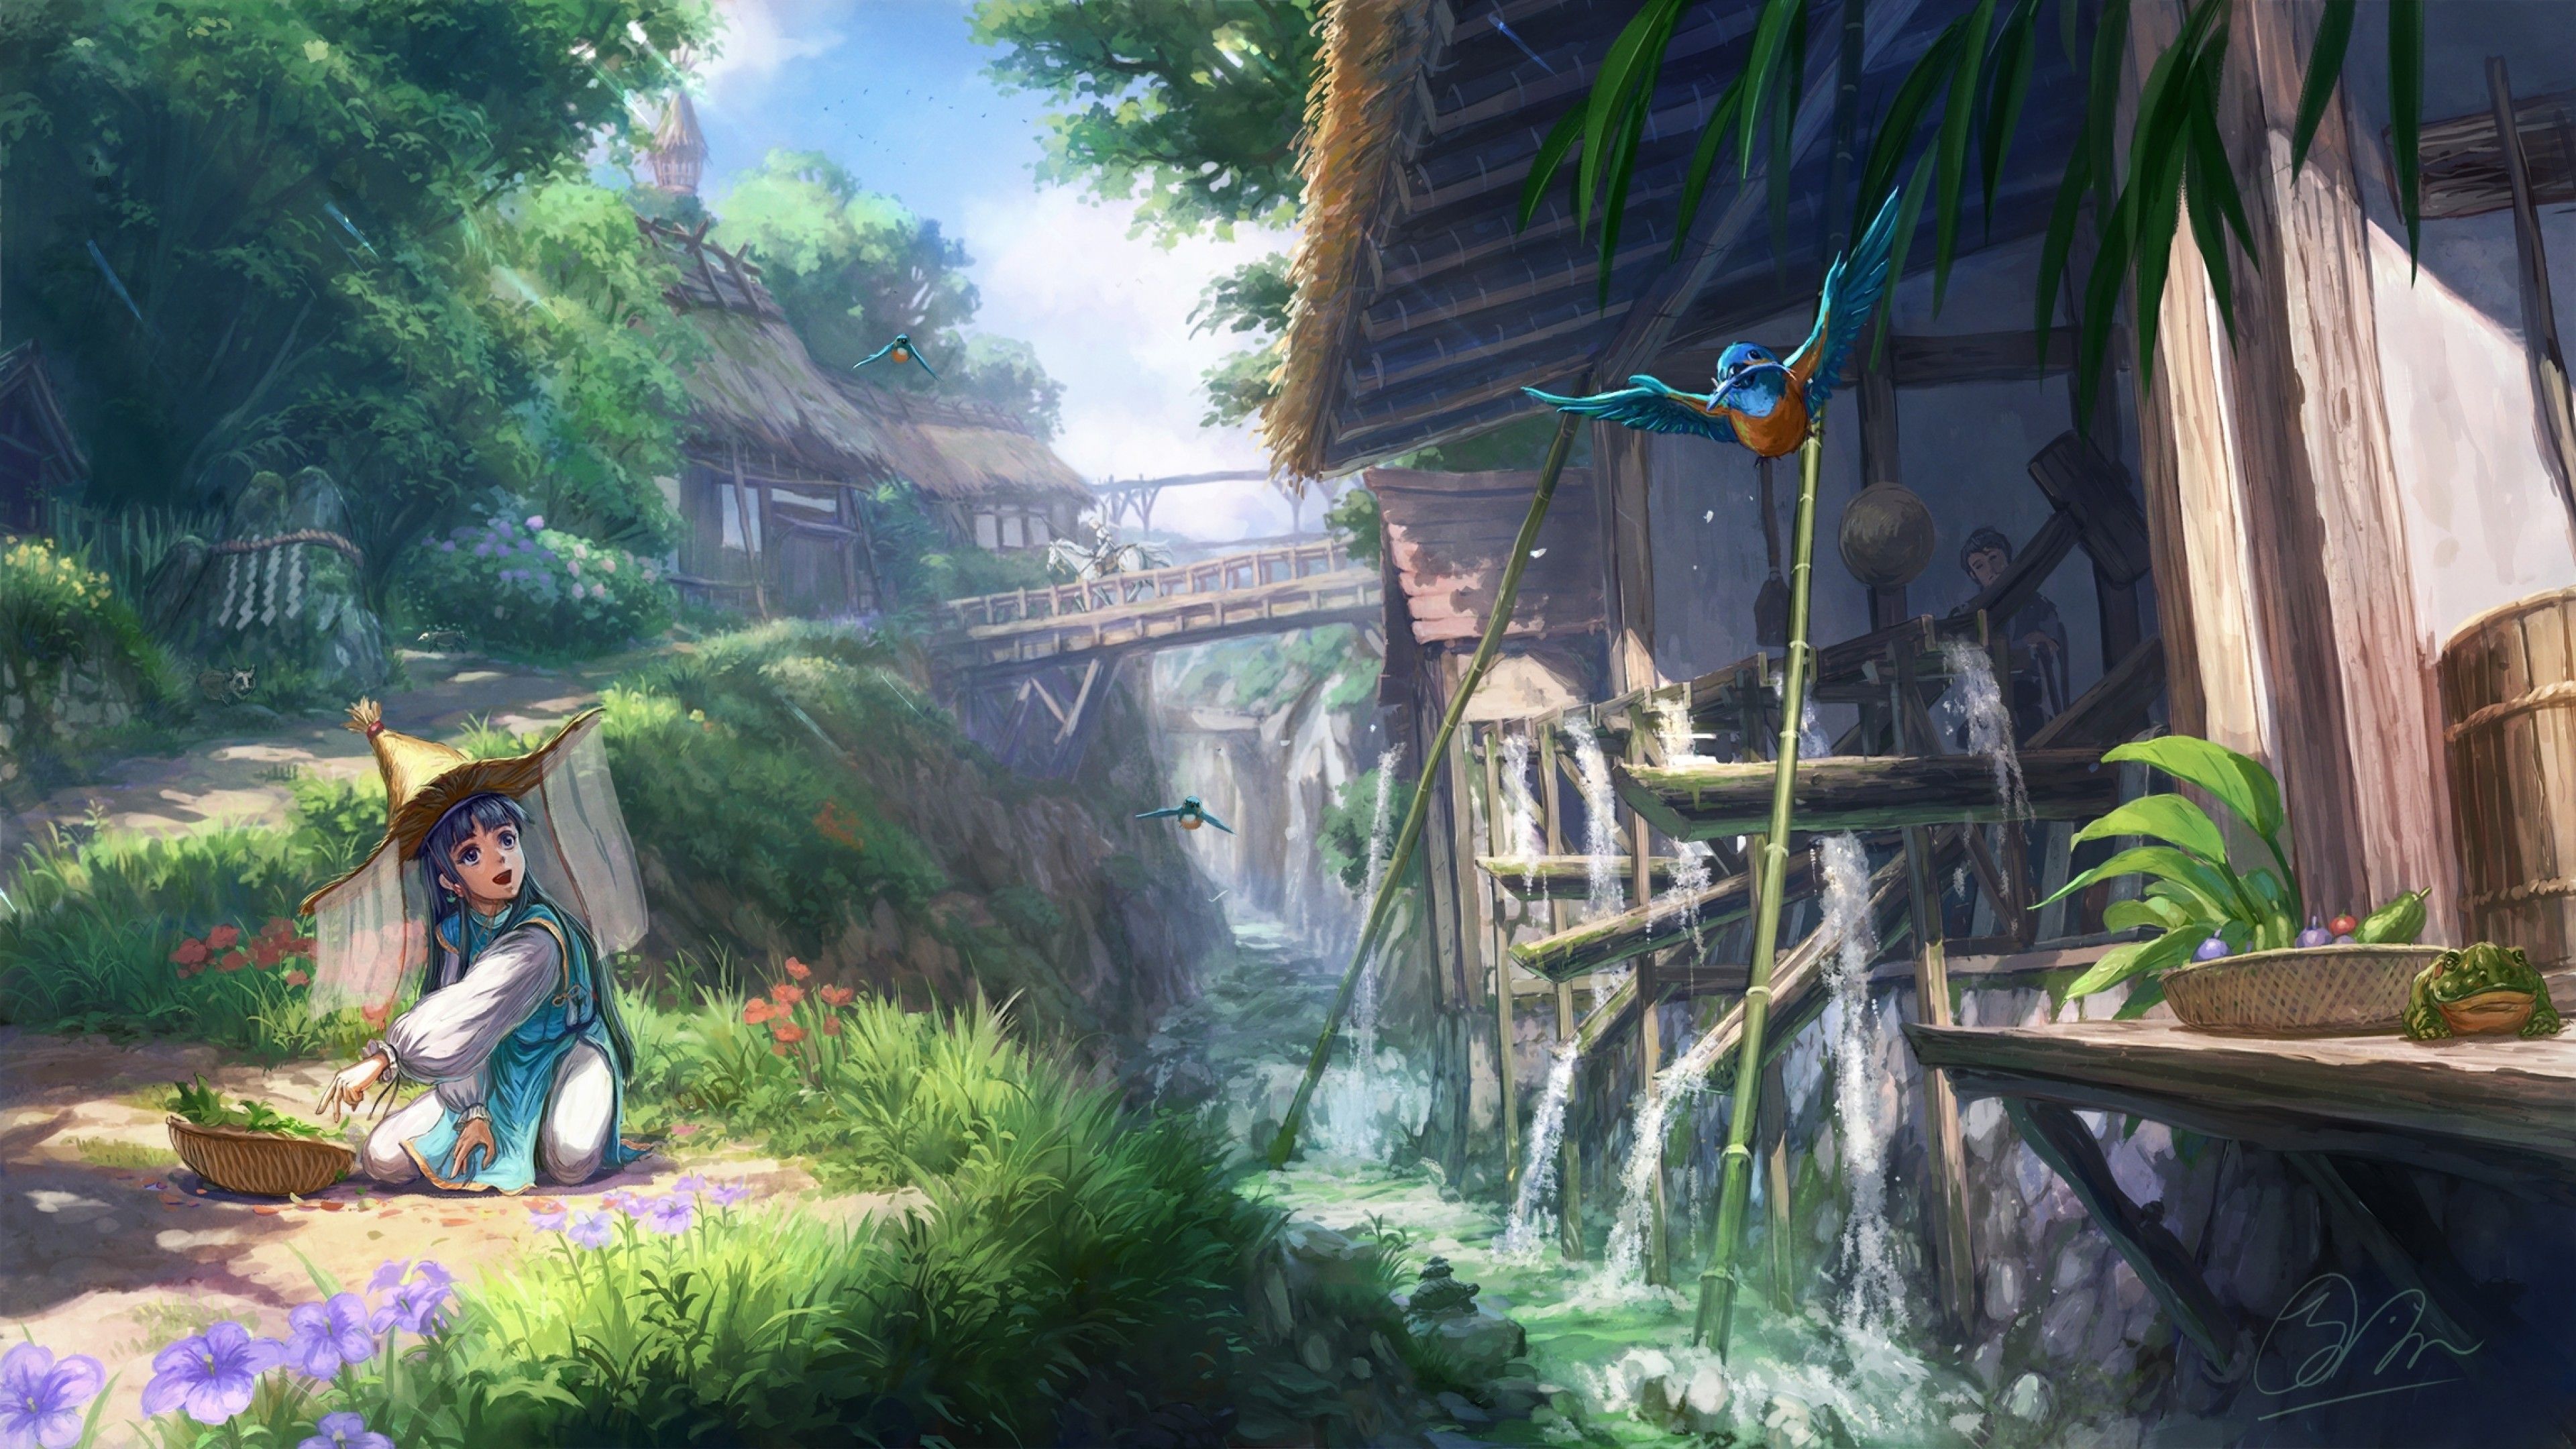 Hình nền Anime làng quê - Wallpaper Cave: Hình nền Anime làng quê rất đẹp với những hiệu ứng đẹp mắt sẽ khiến bạn cảm thấy thích thú và muốn tải về ngay.